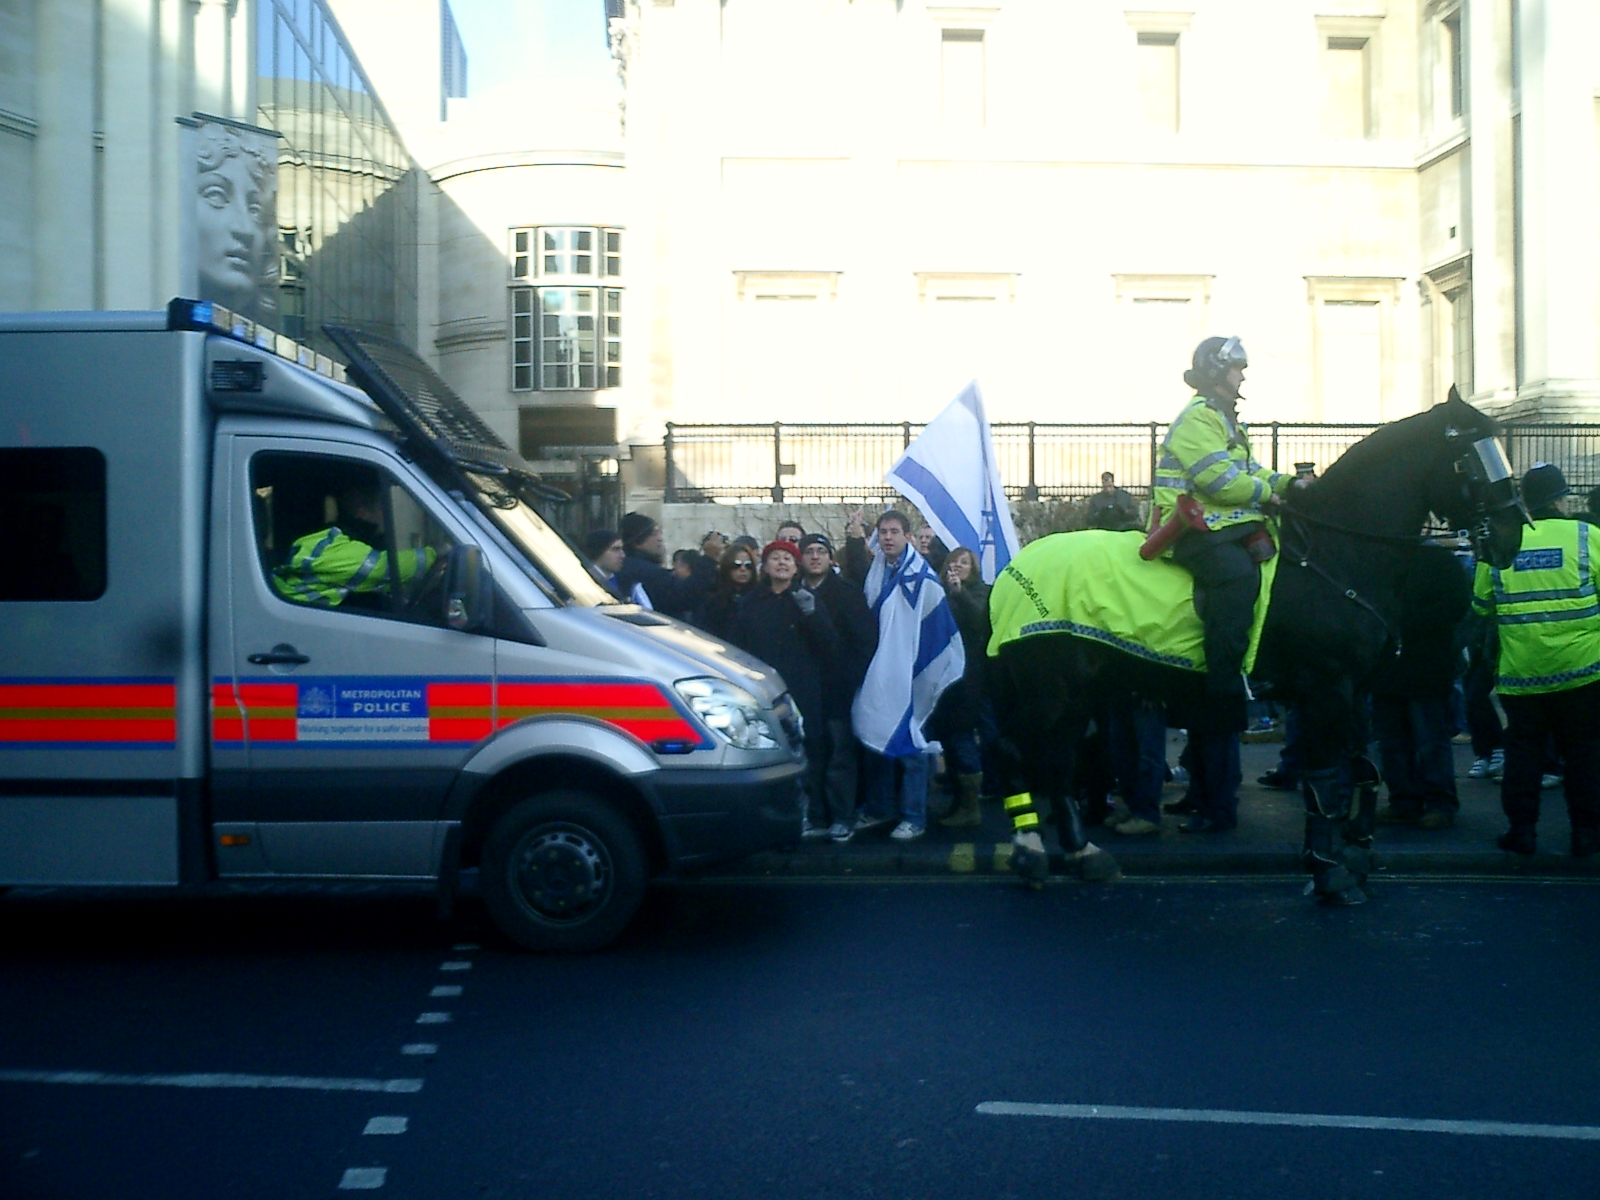 Counter-protest, Trafalgar Square, 11 Jan 09 - Picture 5